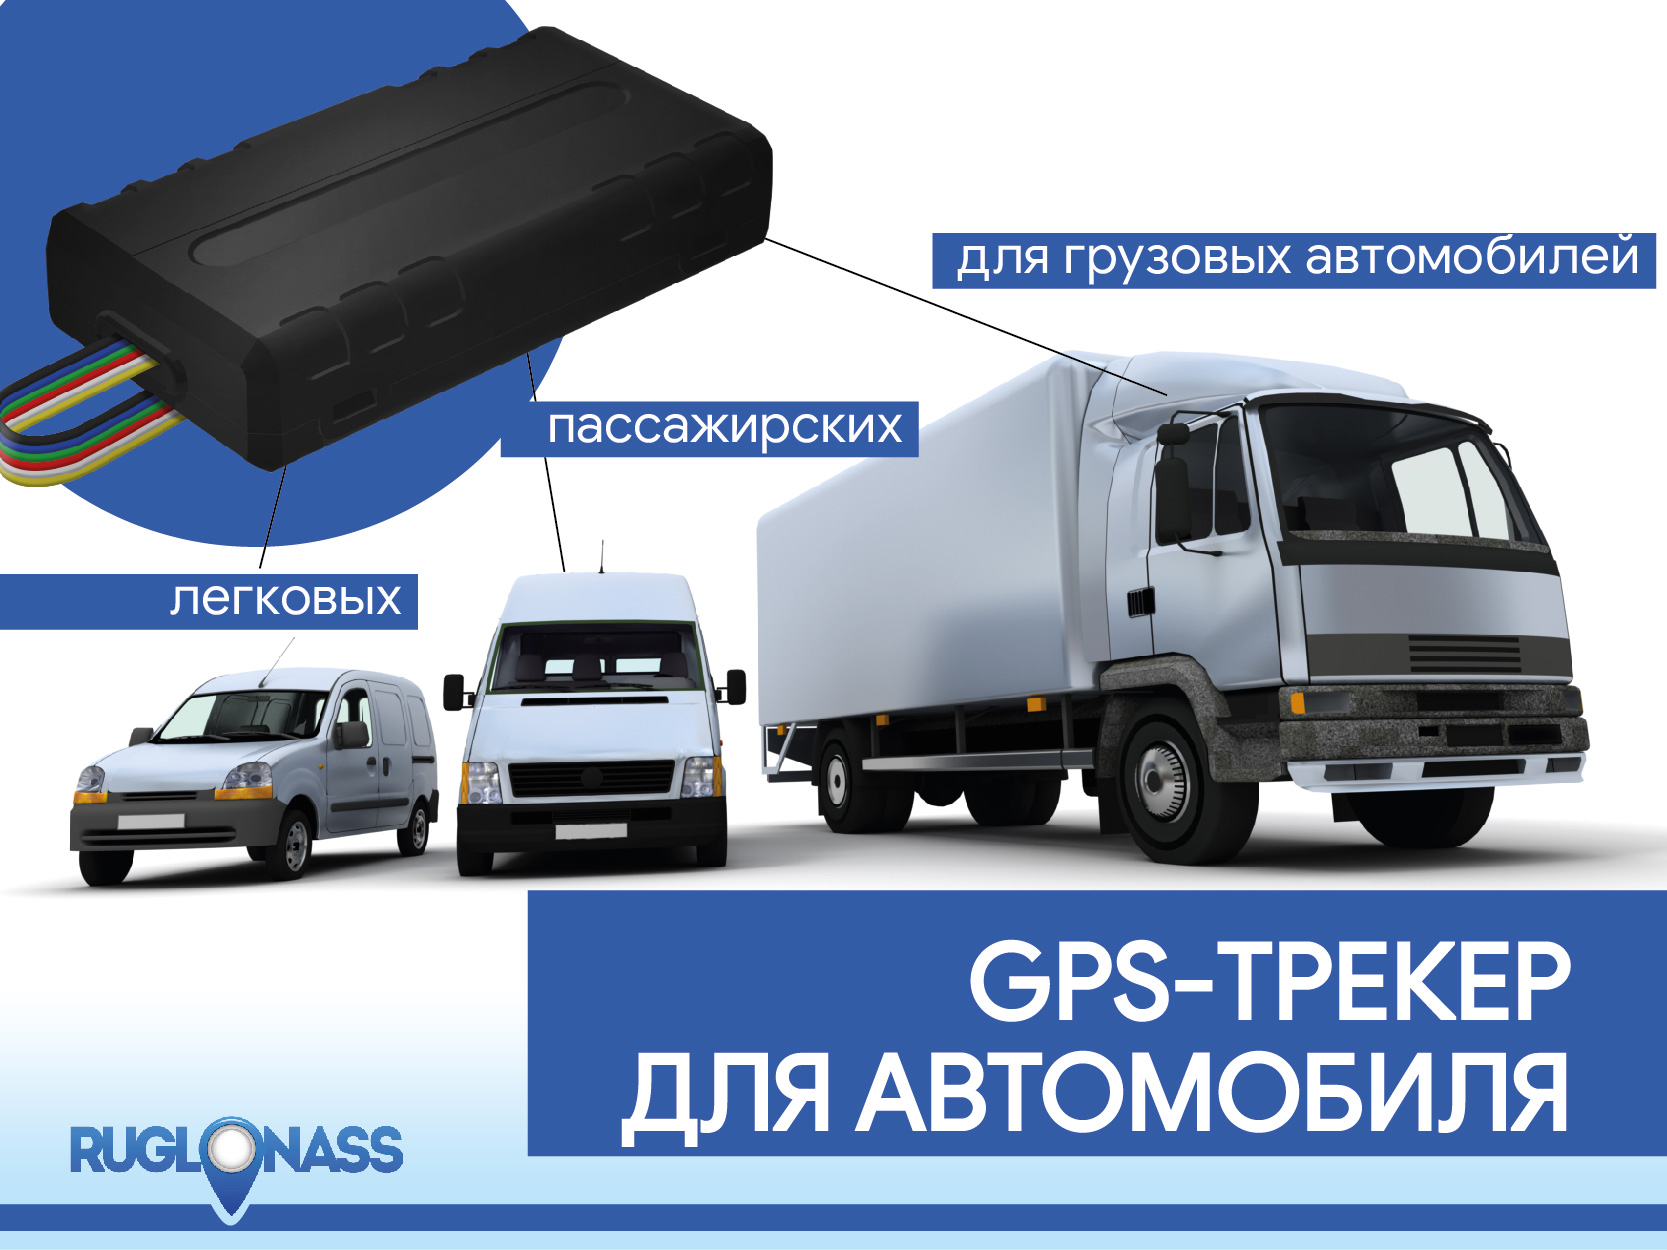 Купить GPS трекер для автомобиля в Самаре или Тольятти